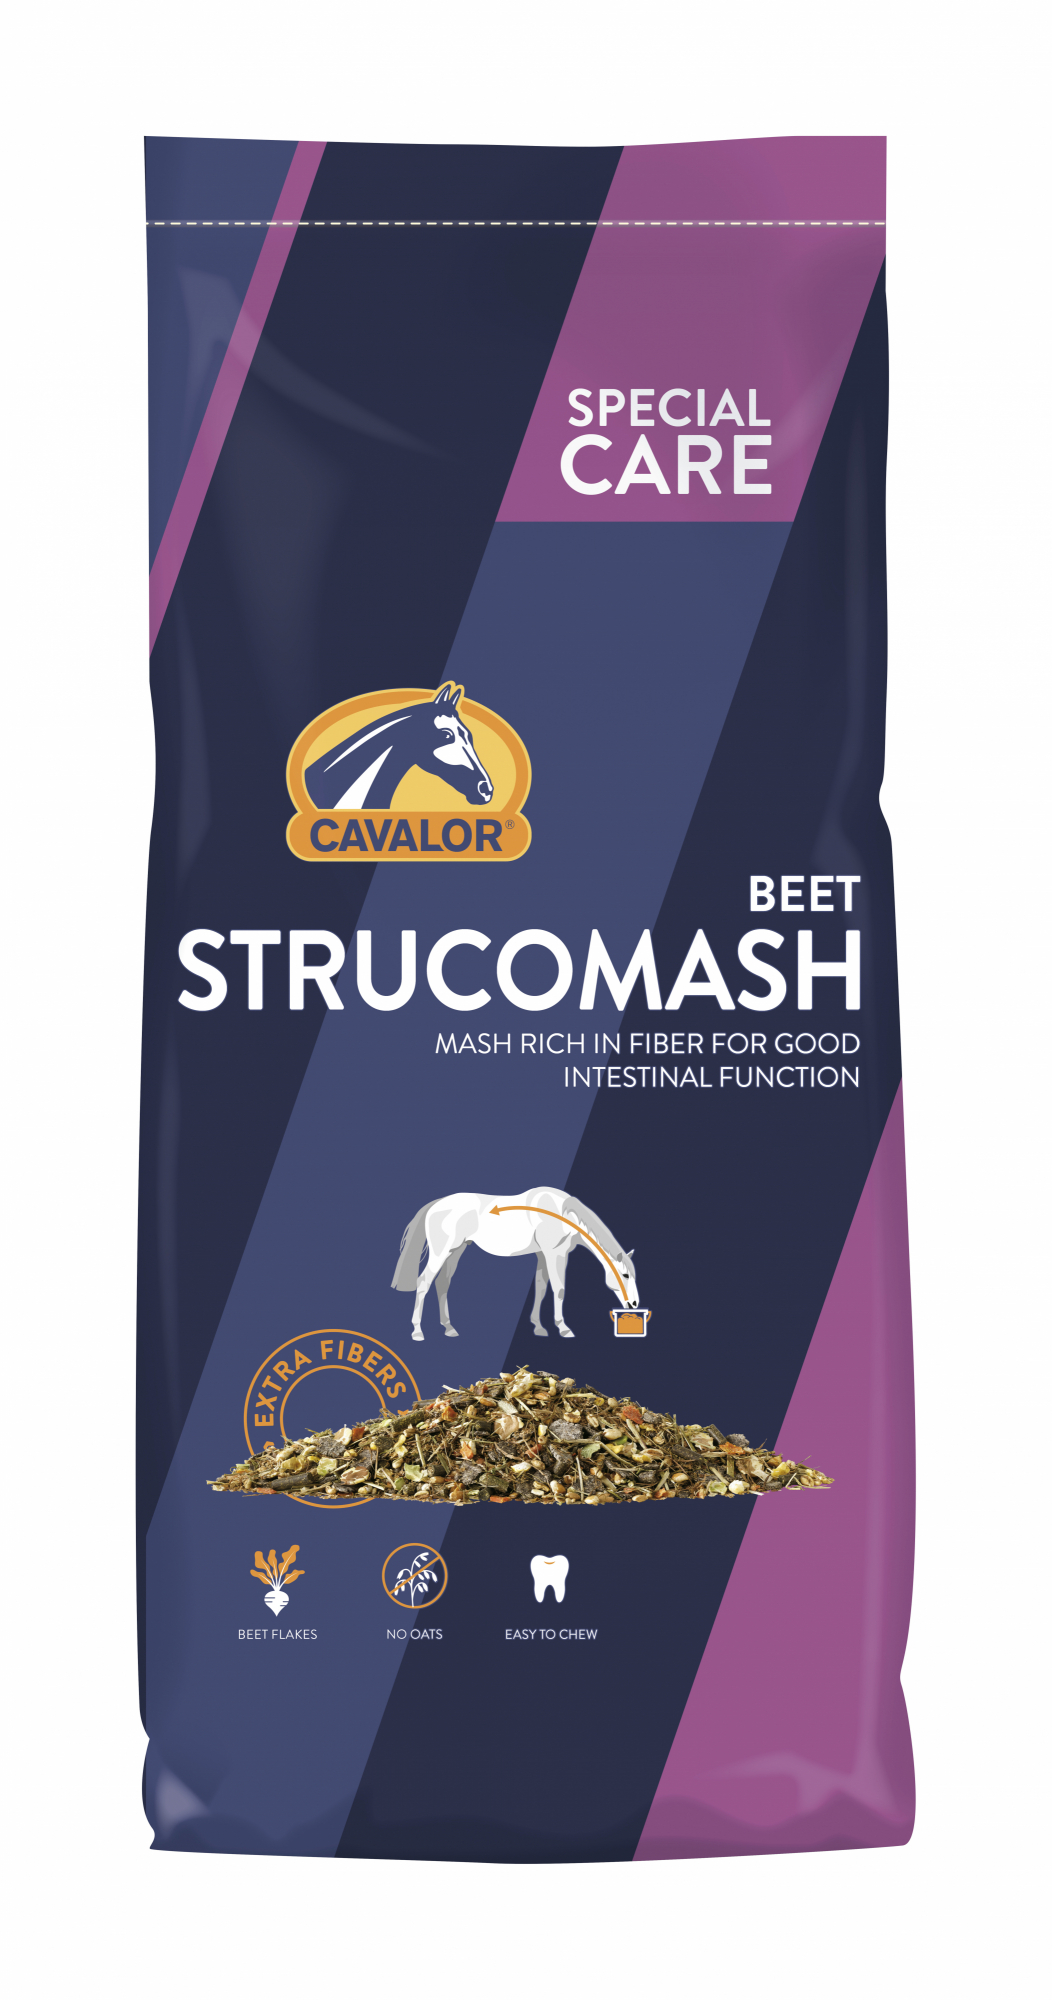 Cavalor Strucomash beet mash pour chevaux